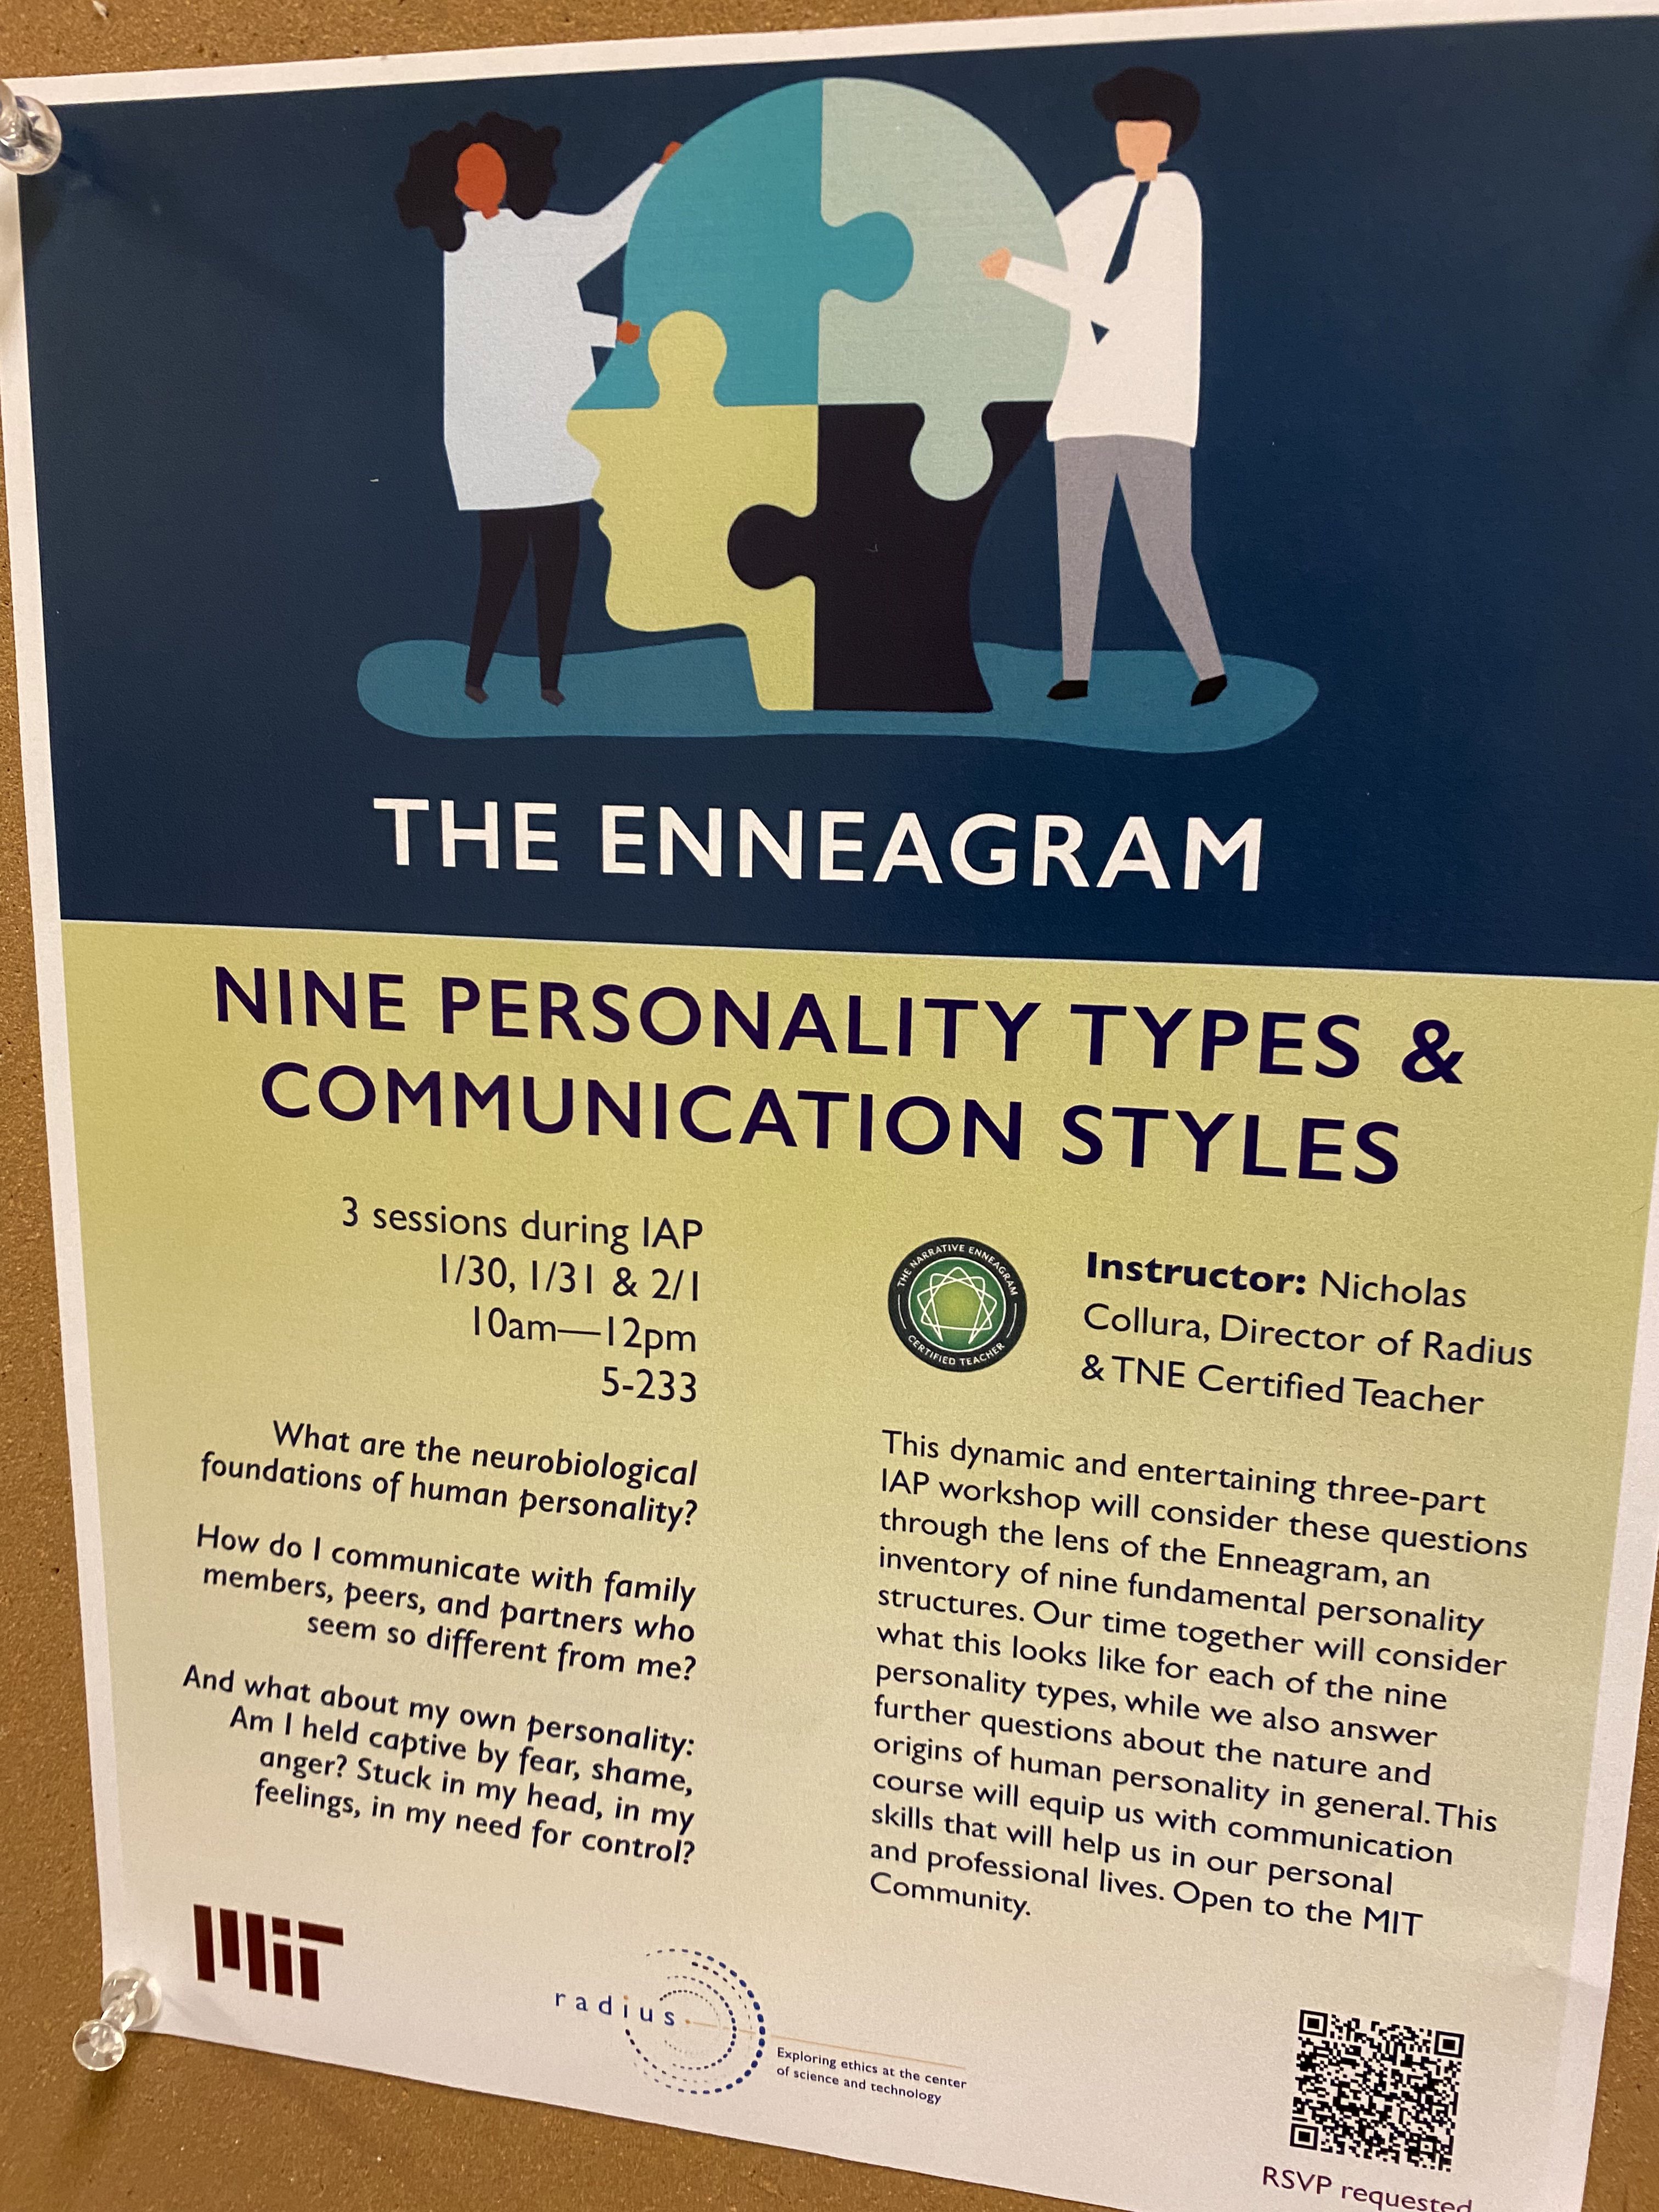 A flyer for an enneagram class